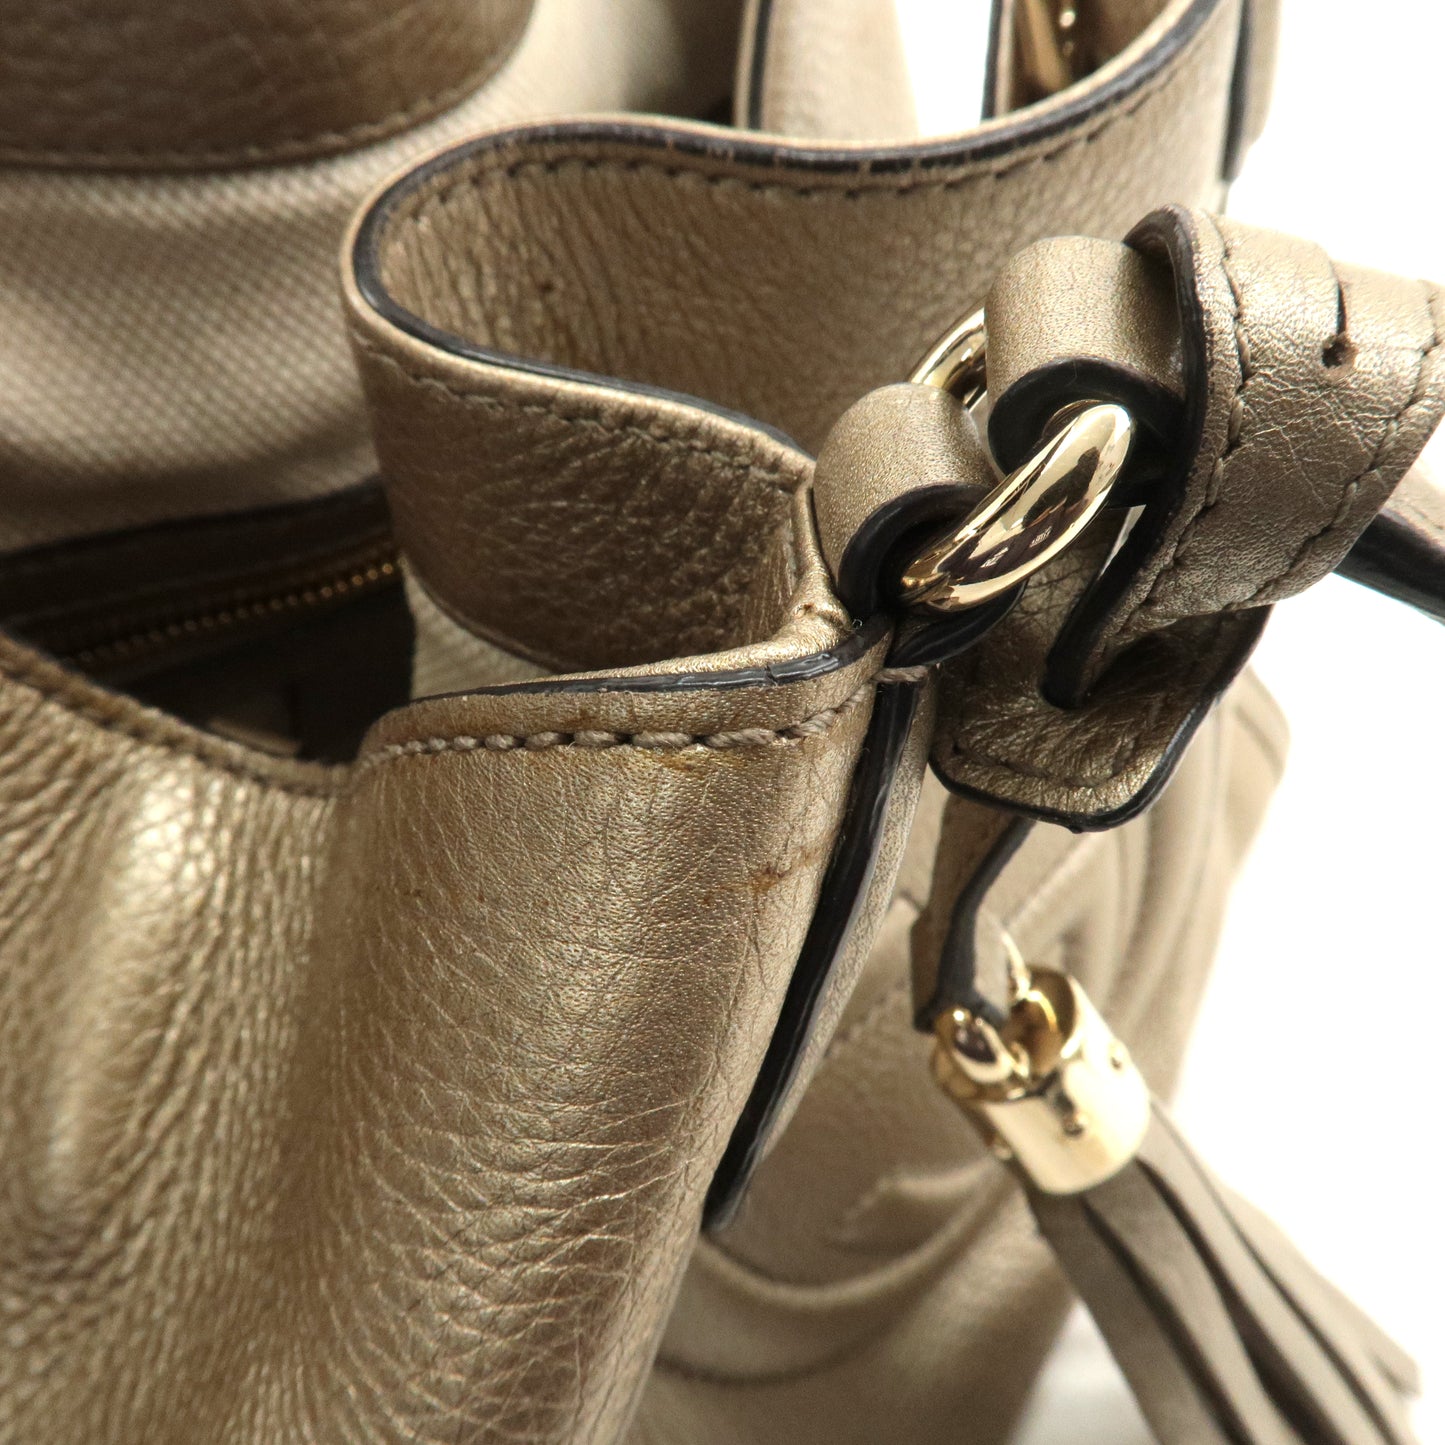 GUCCI SOHO Leather 2Way Bag Hand Bag Shoulder Bag Gold 336751